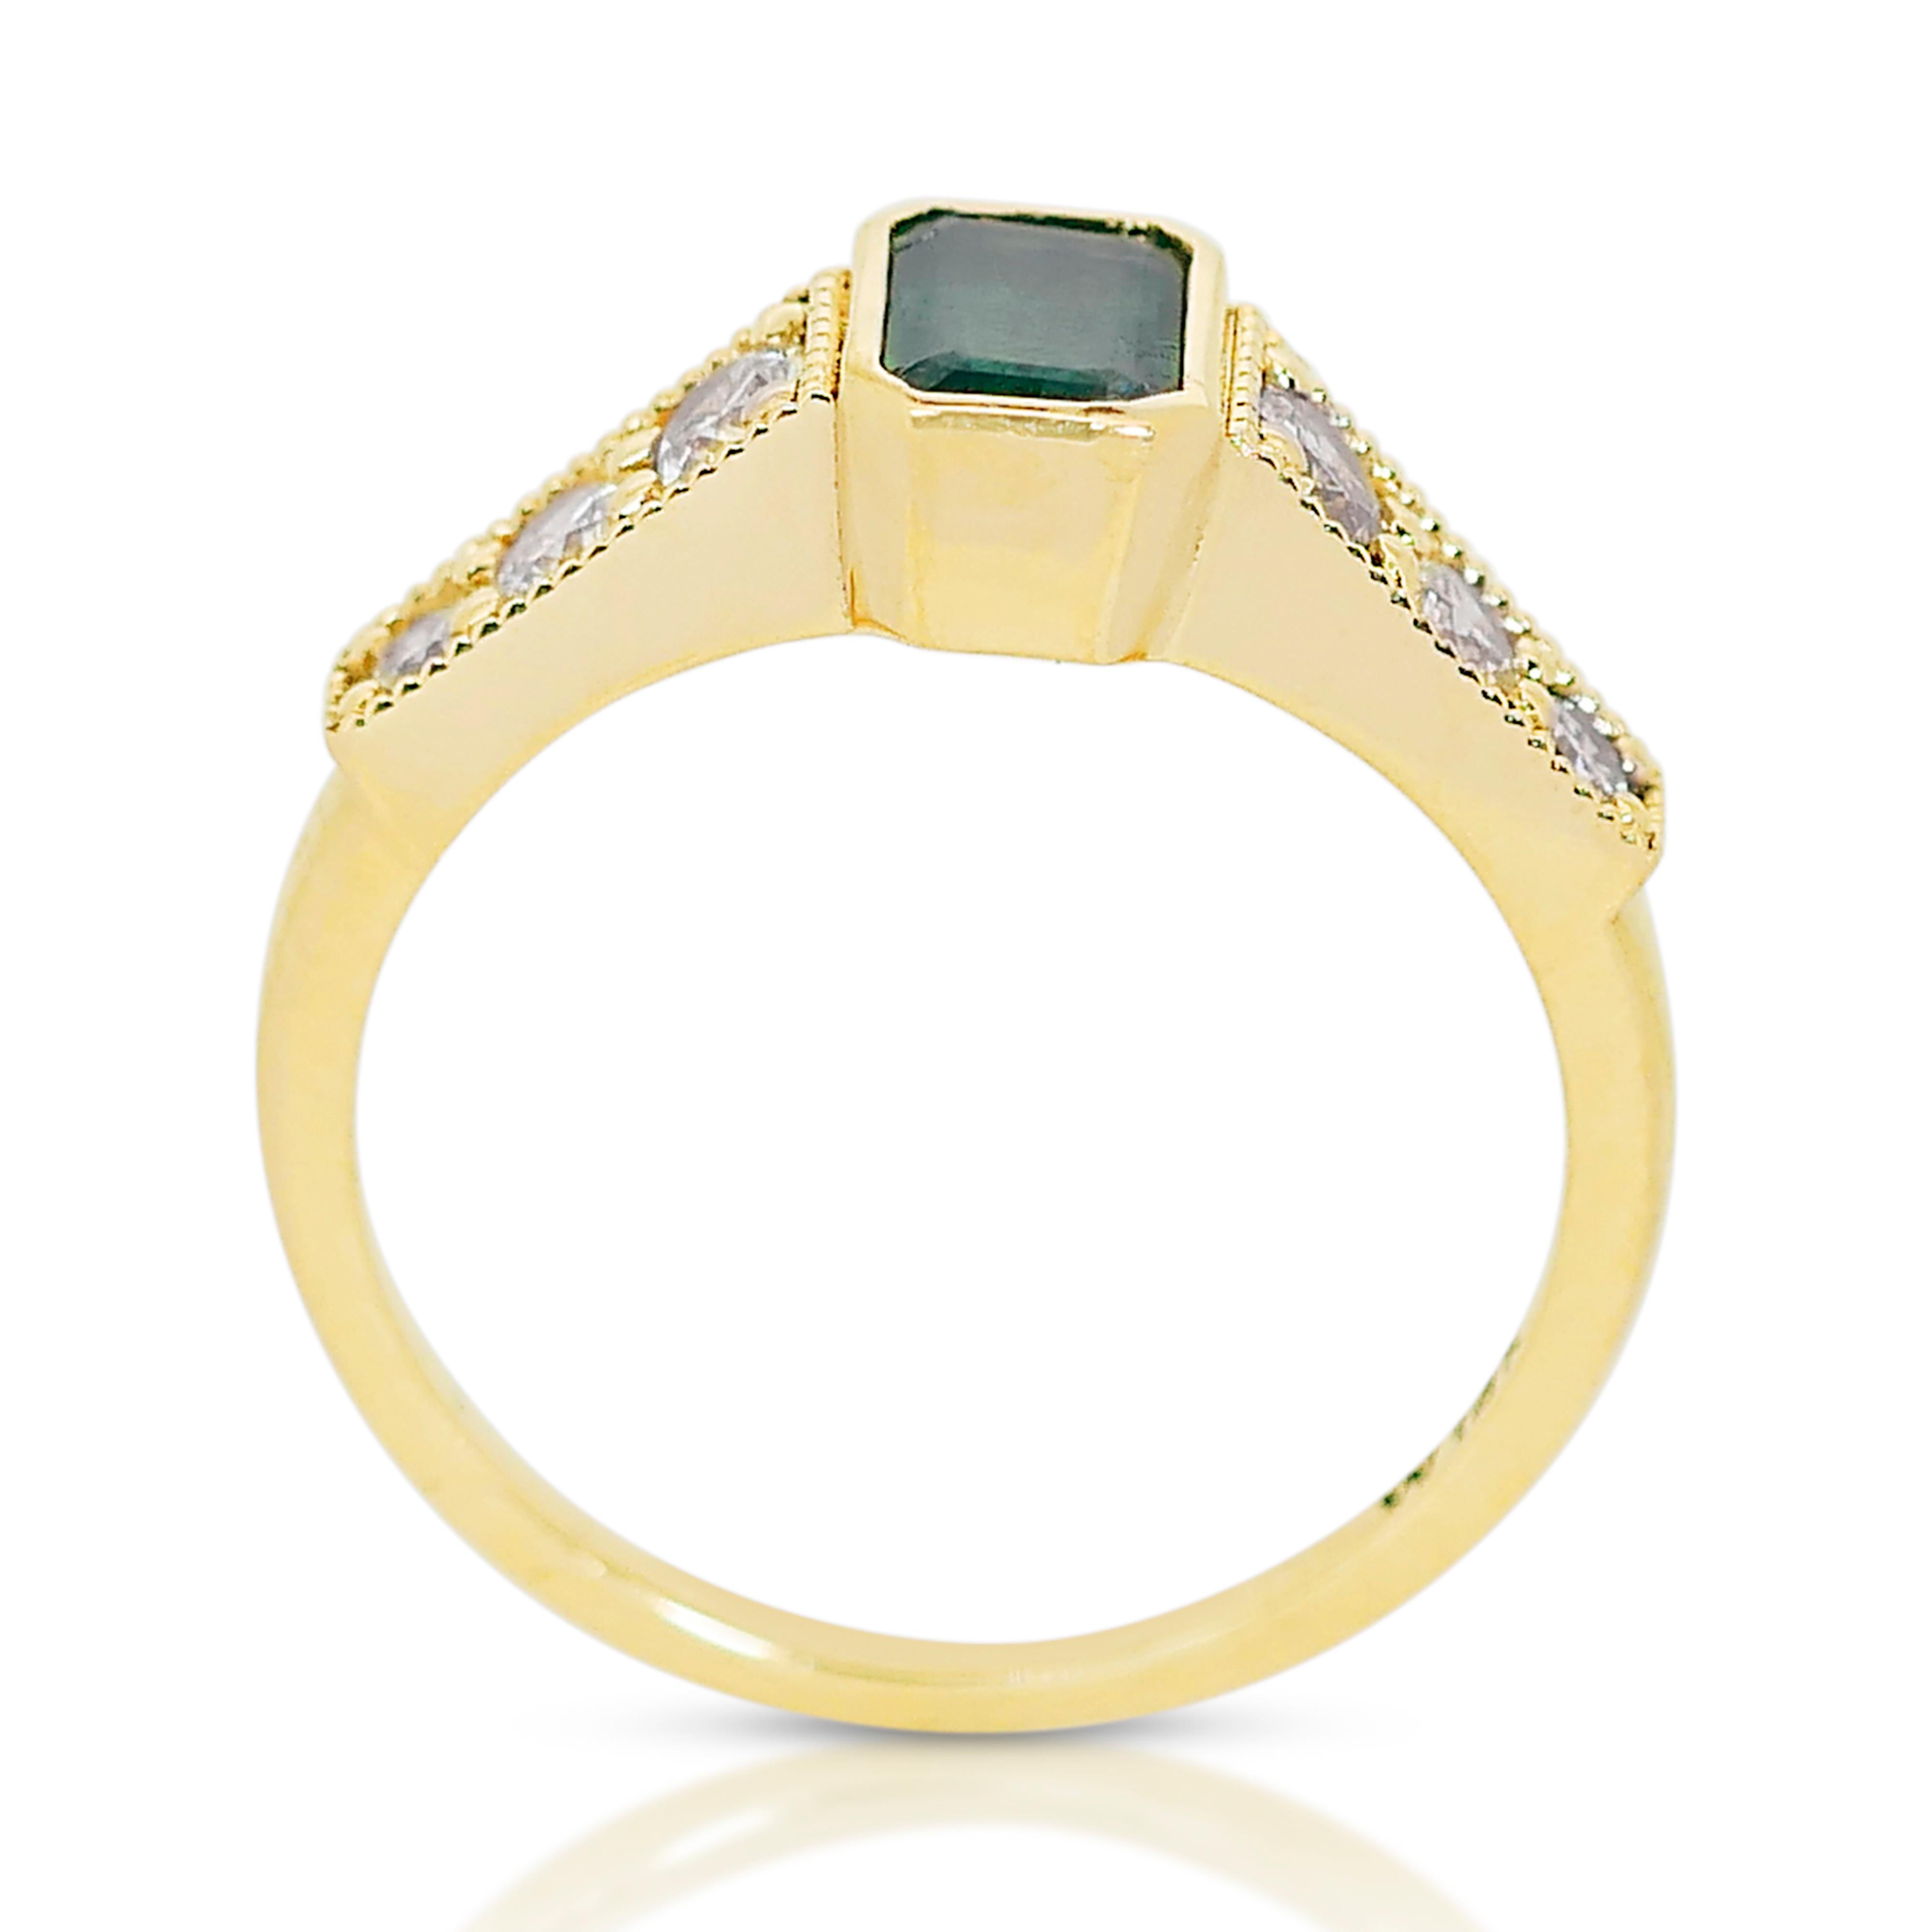 Bezaubernder 14k Gelbgold Smaragd & Diamant Pave-Ring mit/0,89 ct - IGI-zertifiziert 1